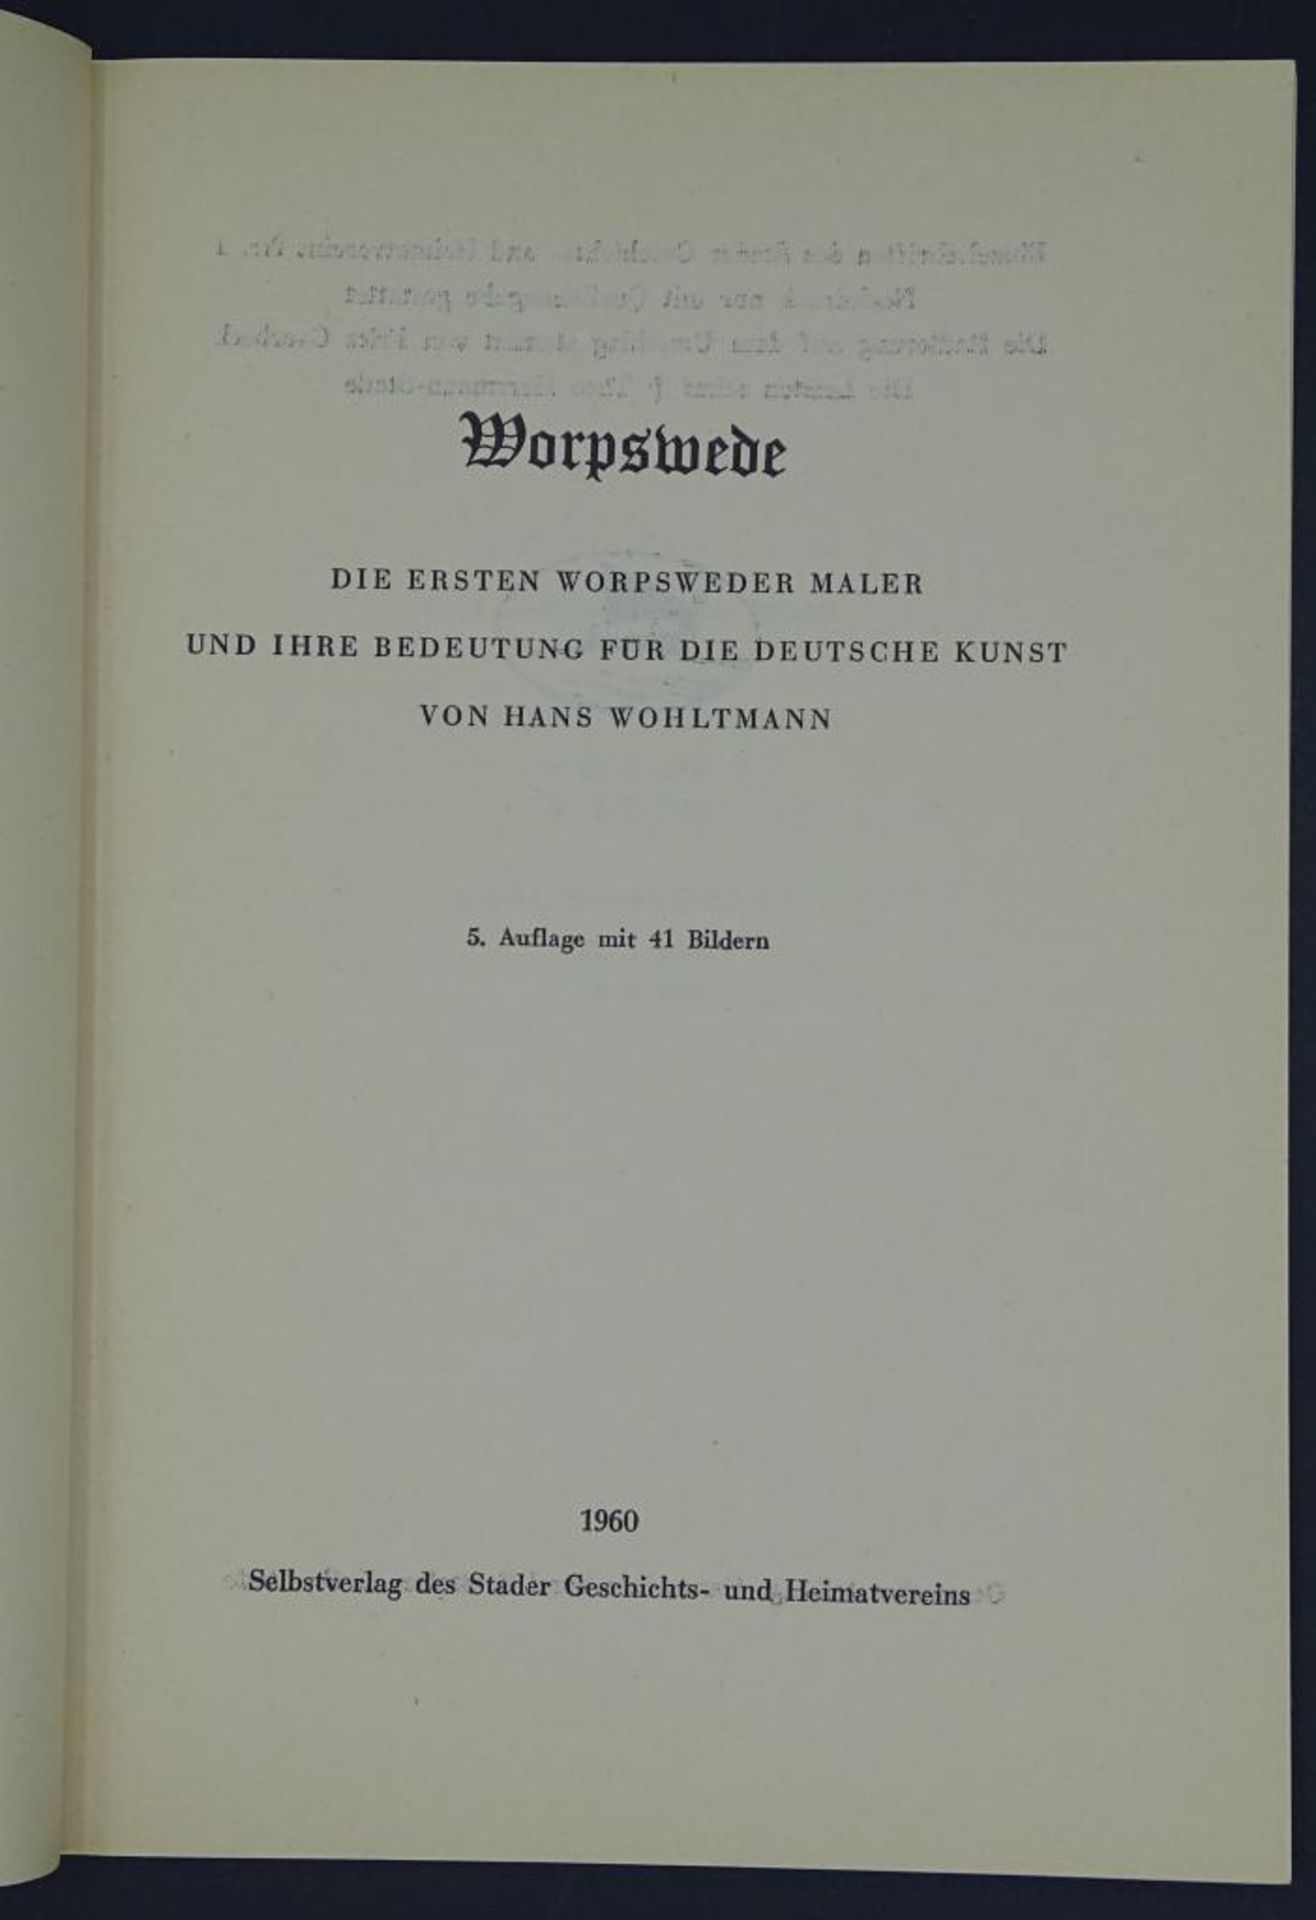 "Worpswede", Die ersten Maler und Ihre Bedeutung, 5.Auflage mit 41 Bildern, 1960 - Bild 2 aus 8